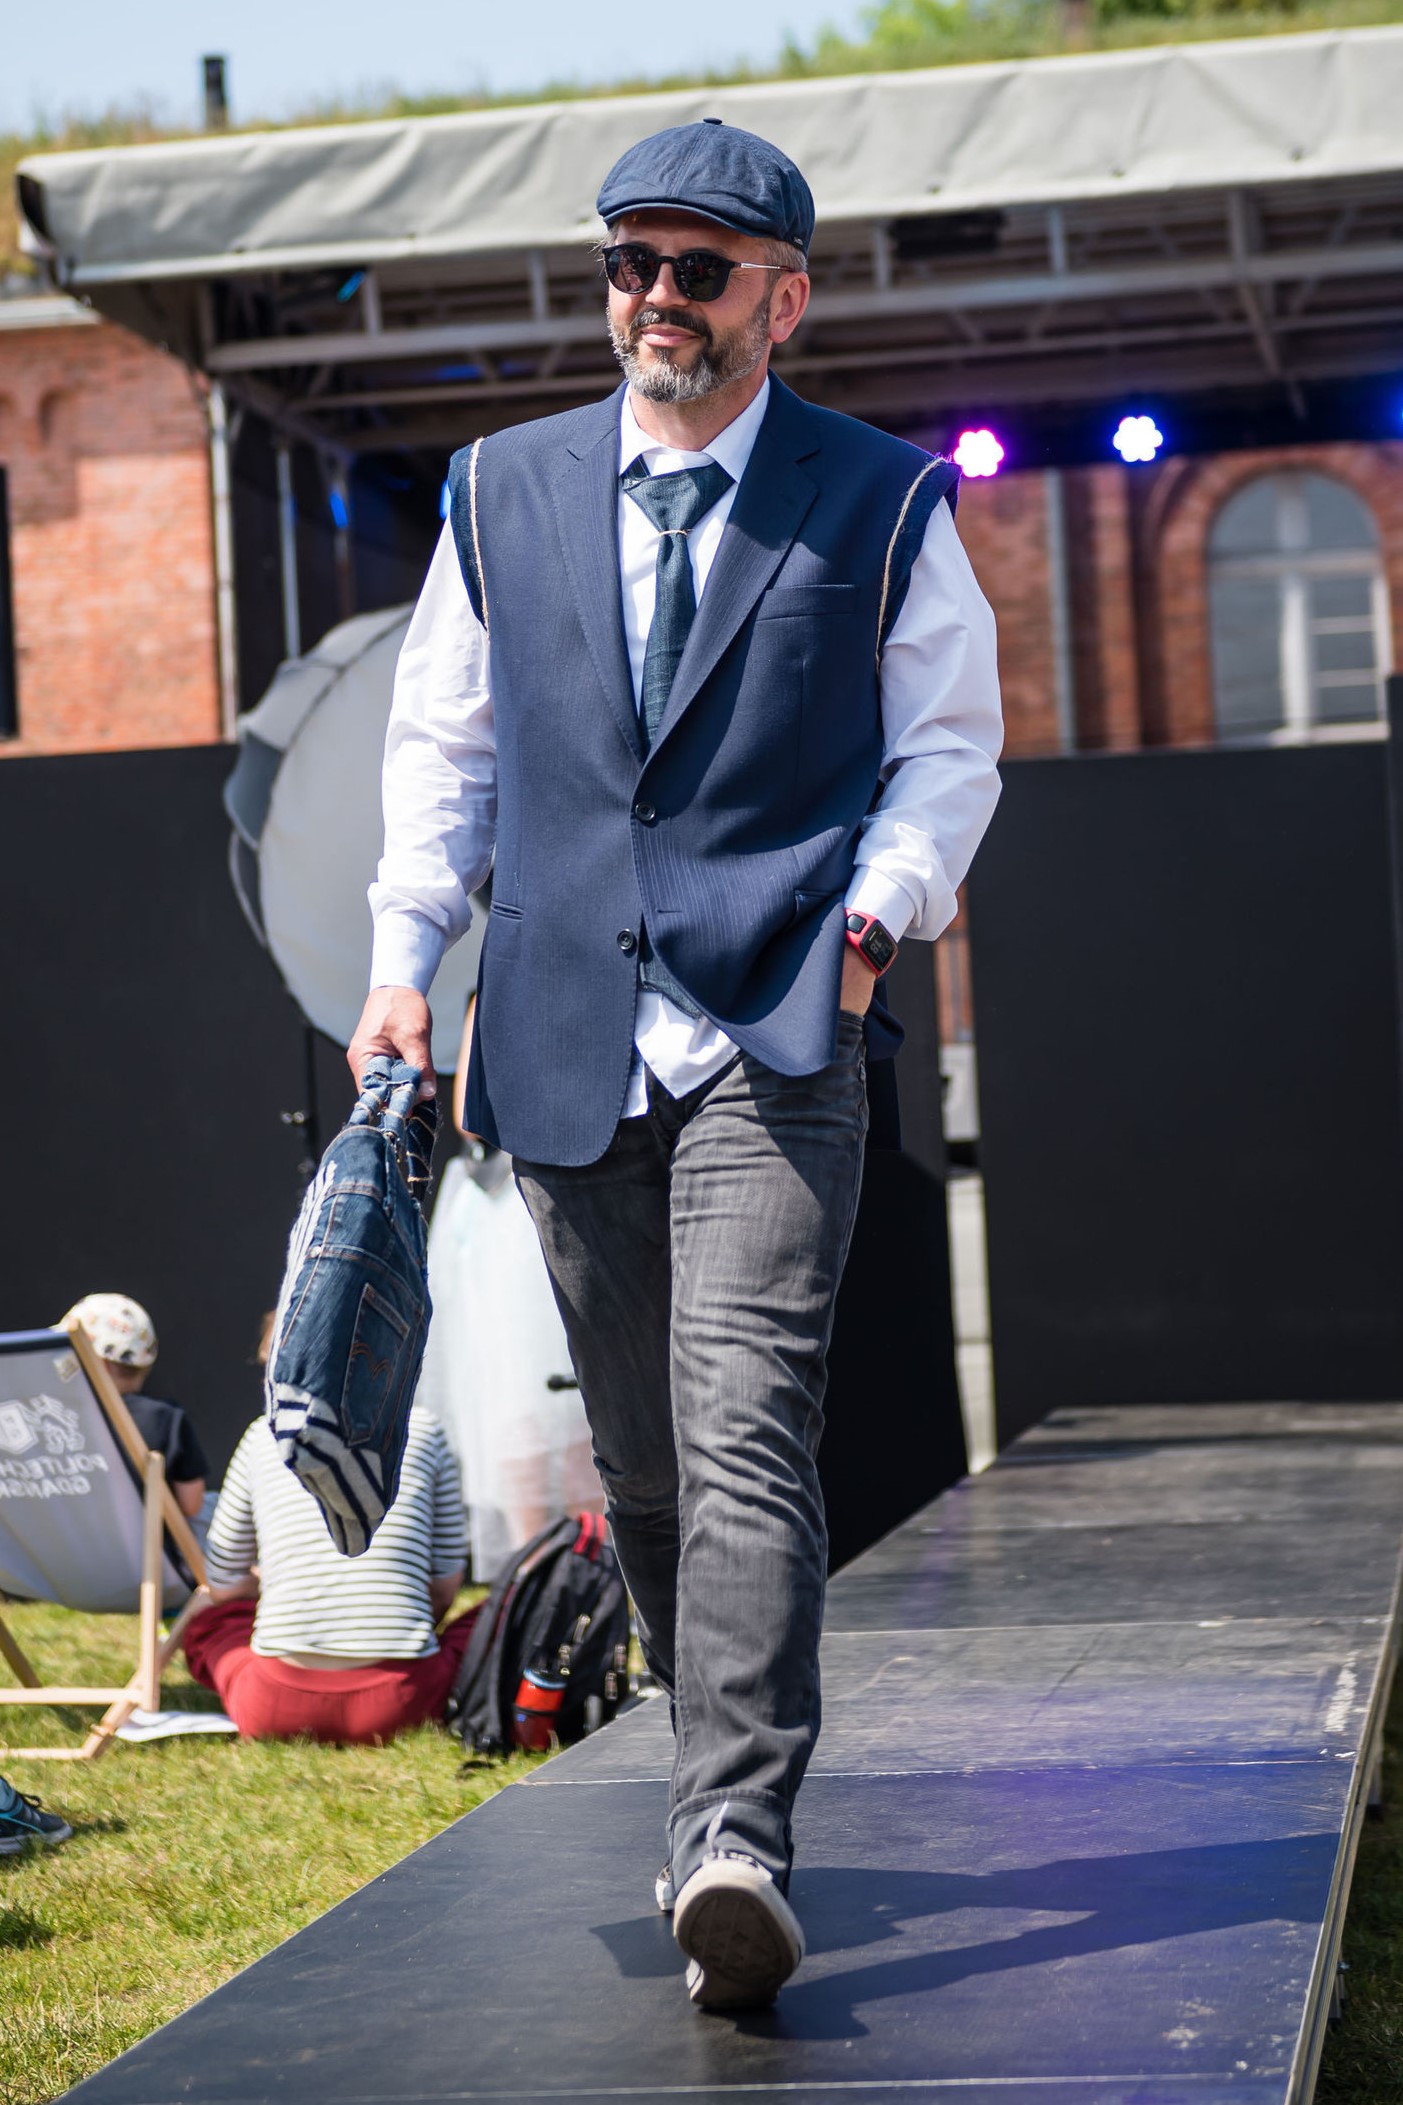 Paweł Golak dyrektor Hevelianum biorący udział w pokazie mody zero waste